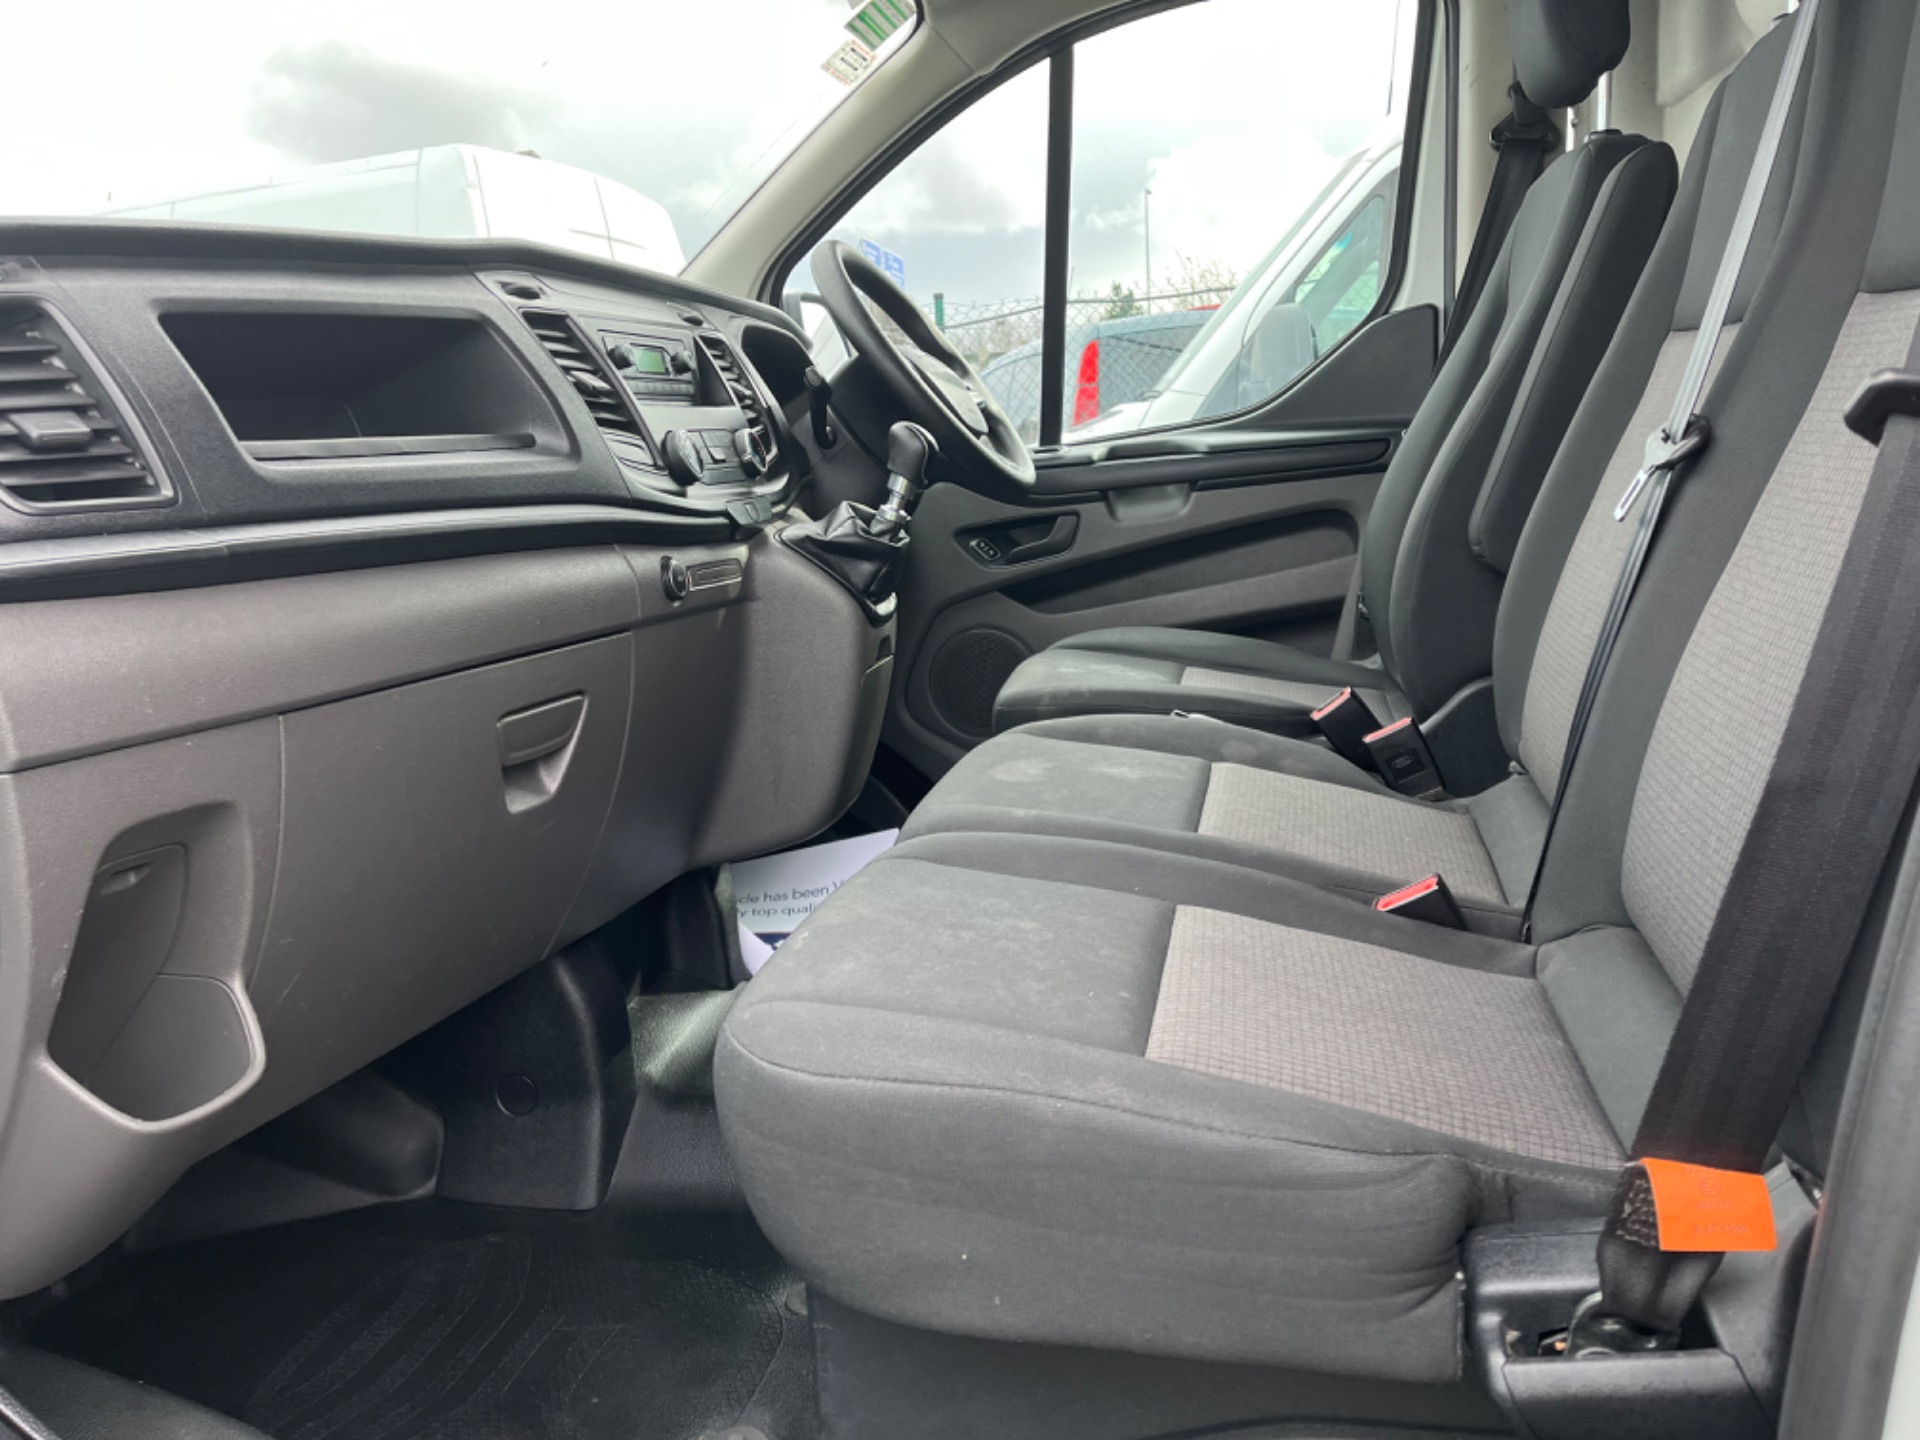 2019 Ford Transit Custom Custom 300L Base 2.0 105PS 3D (191D24069) Thumbnail 11